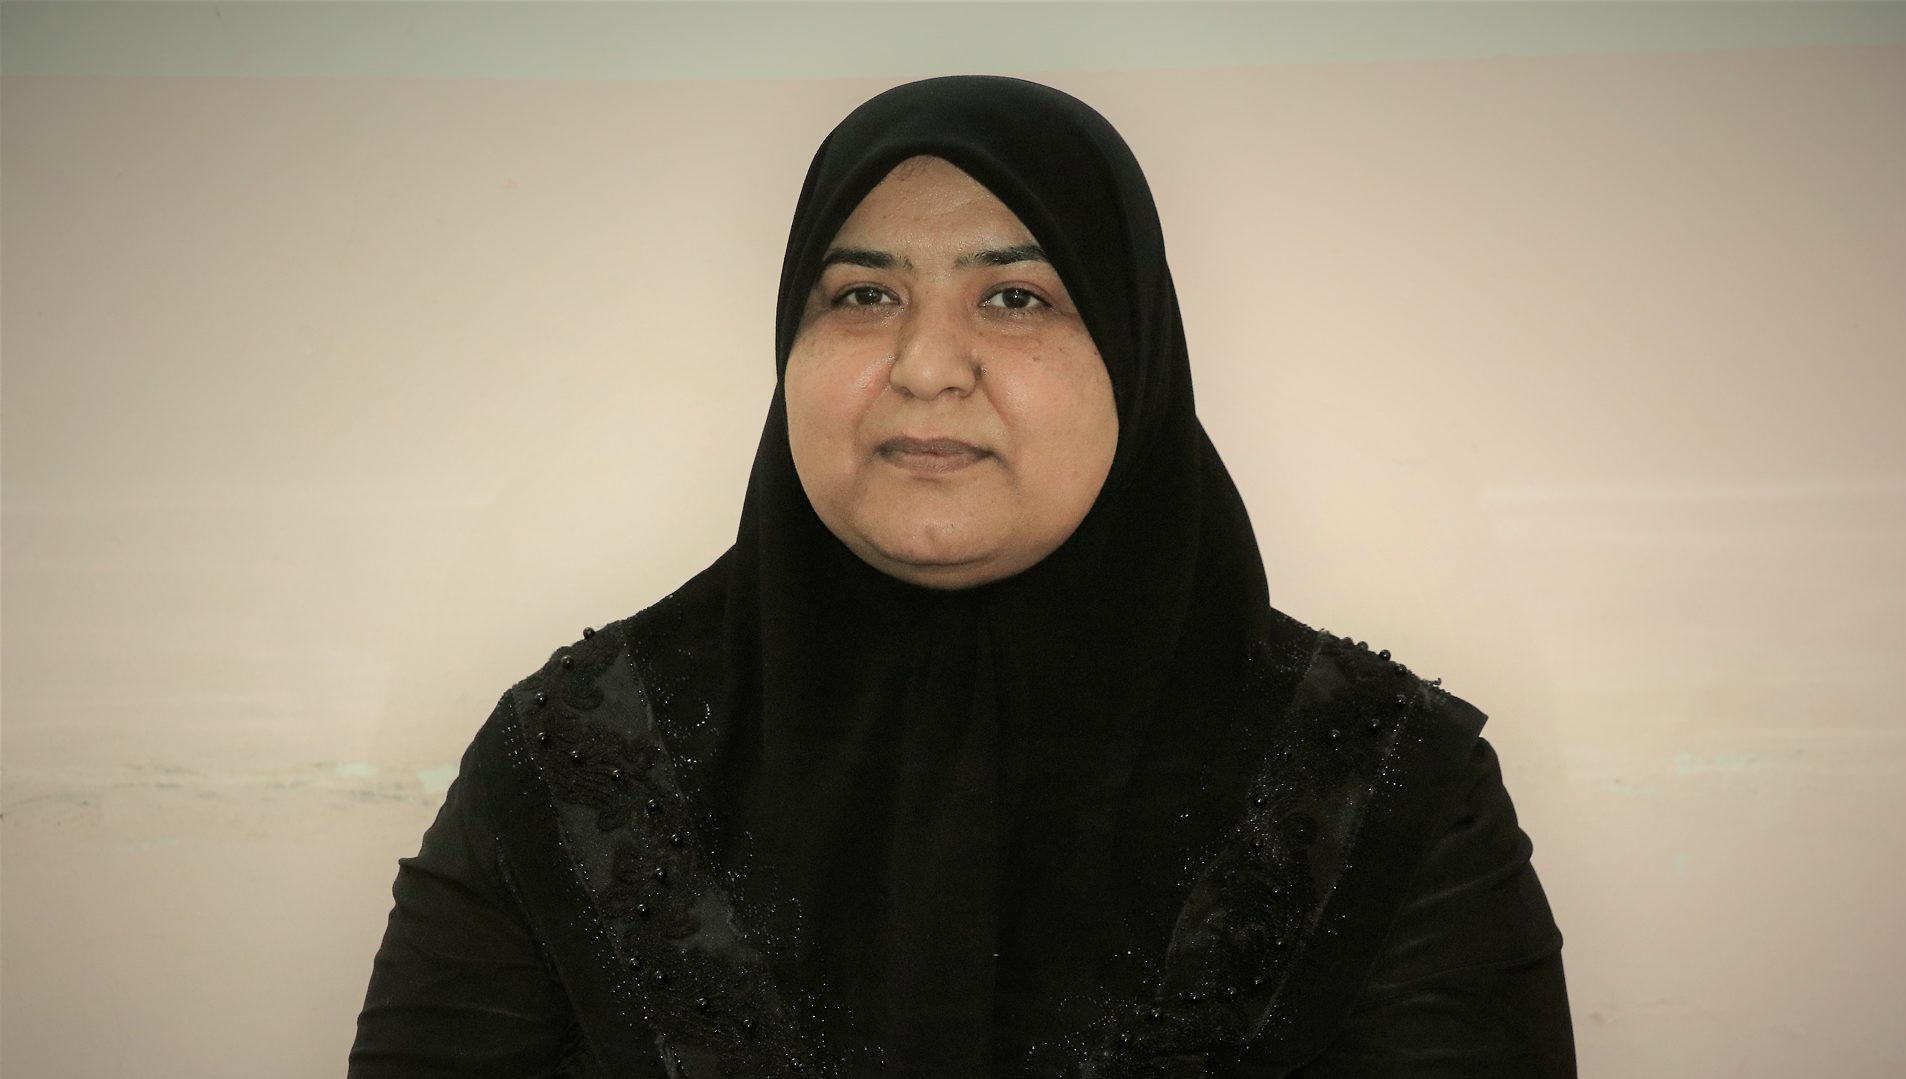 فريال الكعبي رئيسة منظمة أوان للتوعية وتنمية القدرات - العراق. | Perspectives, Manar Al-Zubaidi)